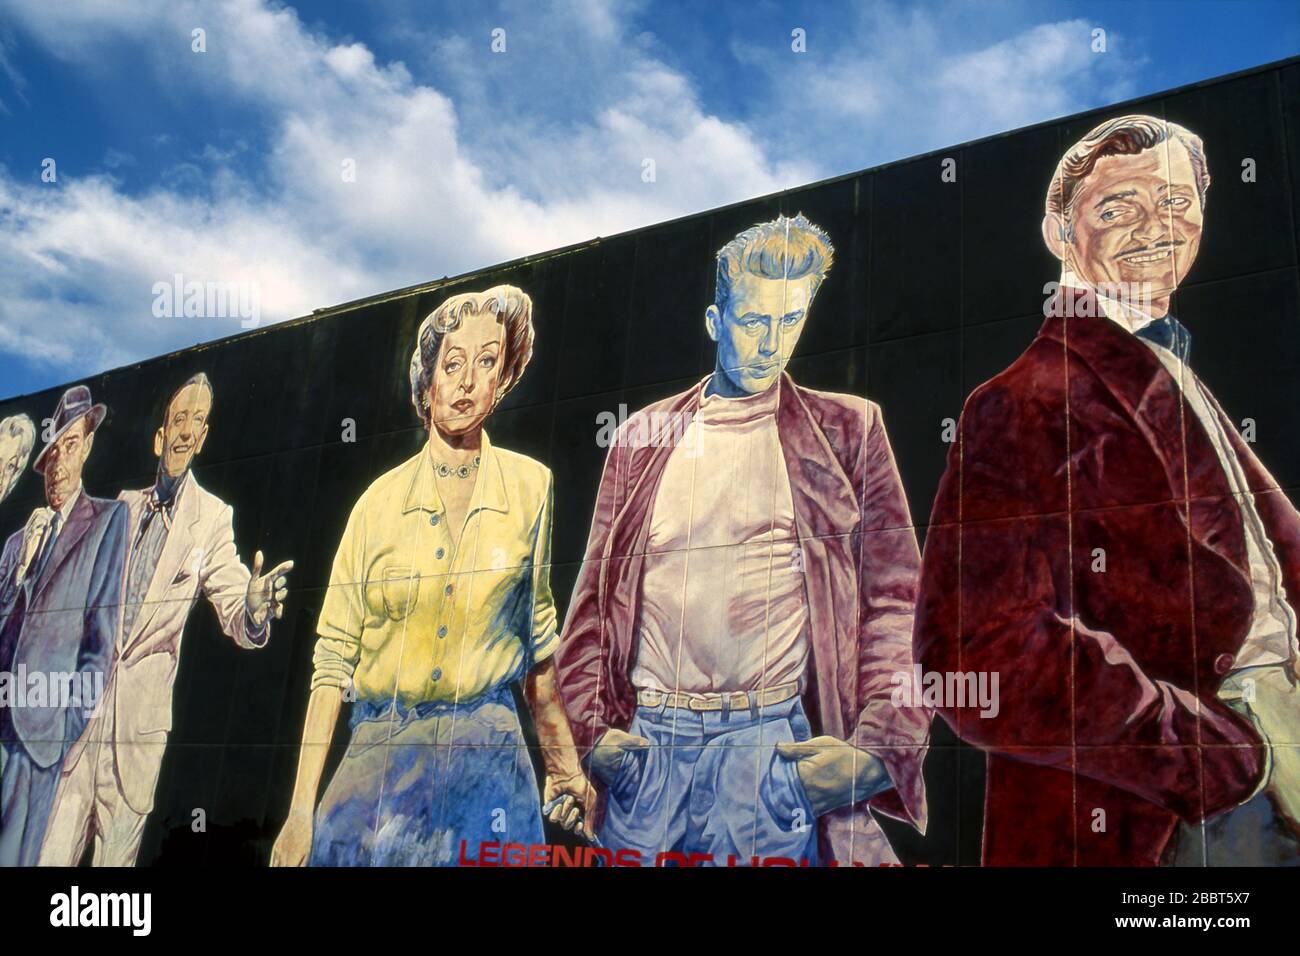 La fresque « Legends of Hollywood » peinte par Eloy Torrez dépeint des stars légendaires du cinéma hollywoodien, notamment James Dean, Clark Galble, Bette Davis et d'autres, et située à Hollywood, Californie Banque D'Images